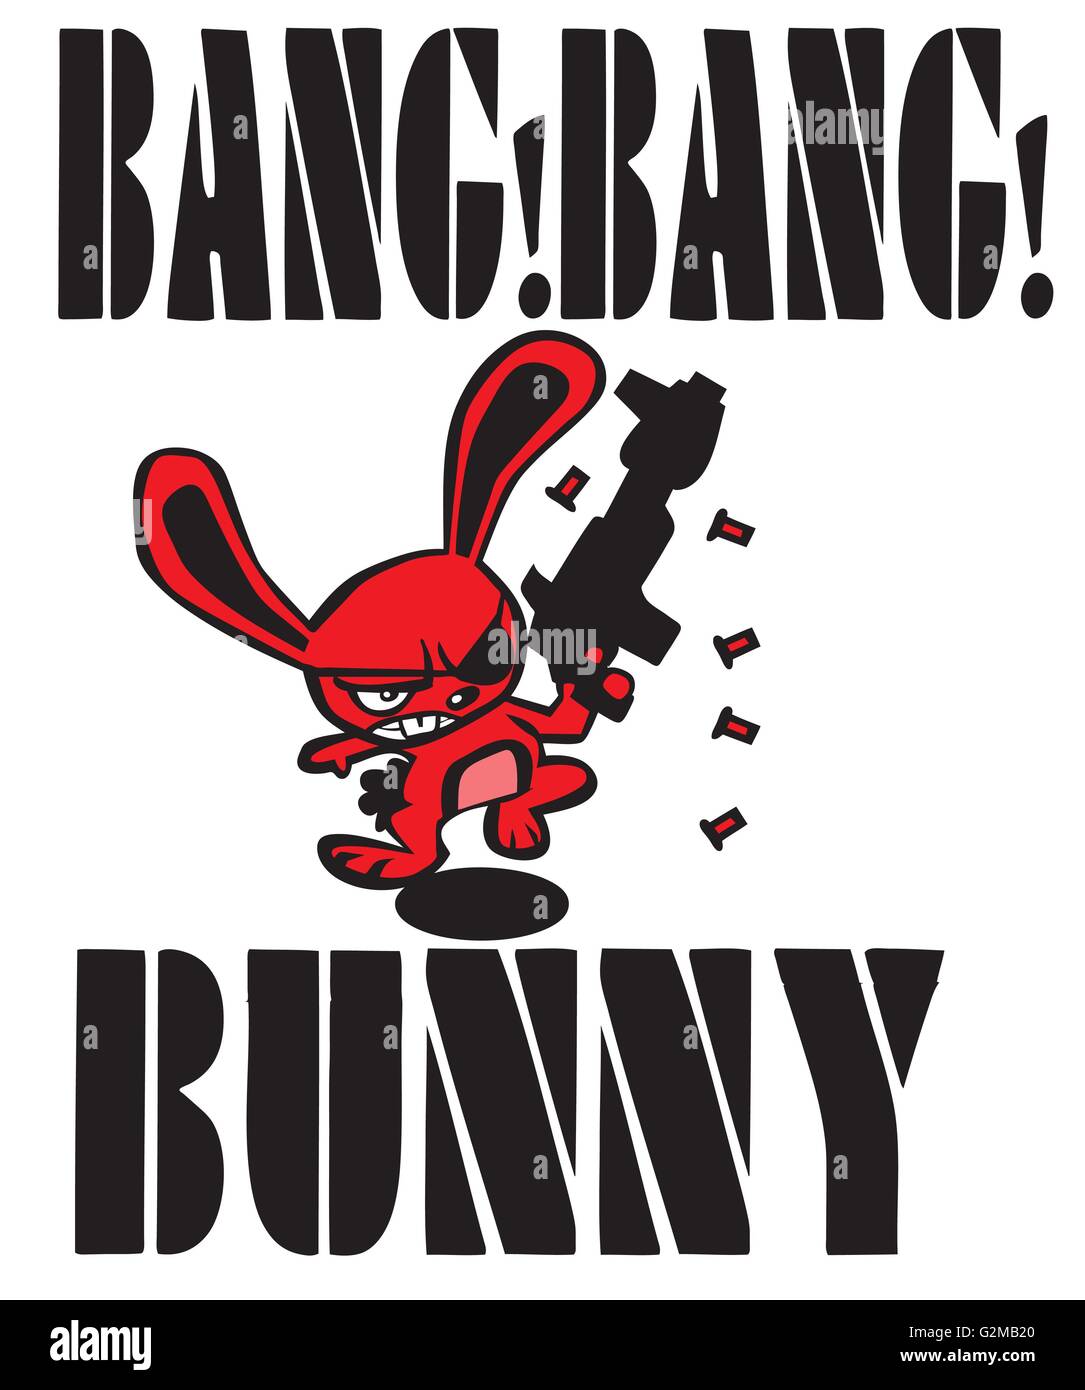 Red rabbit tournant et des armes de tir Banque D'Images